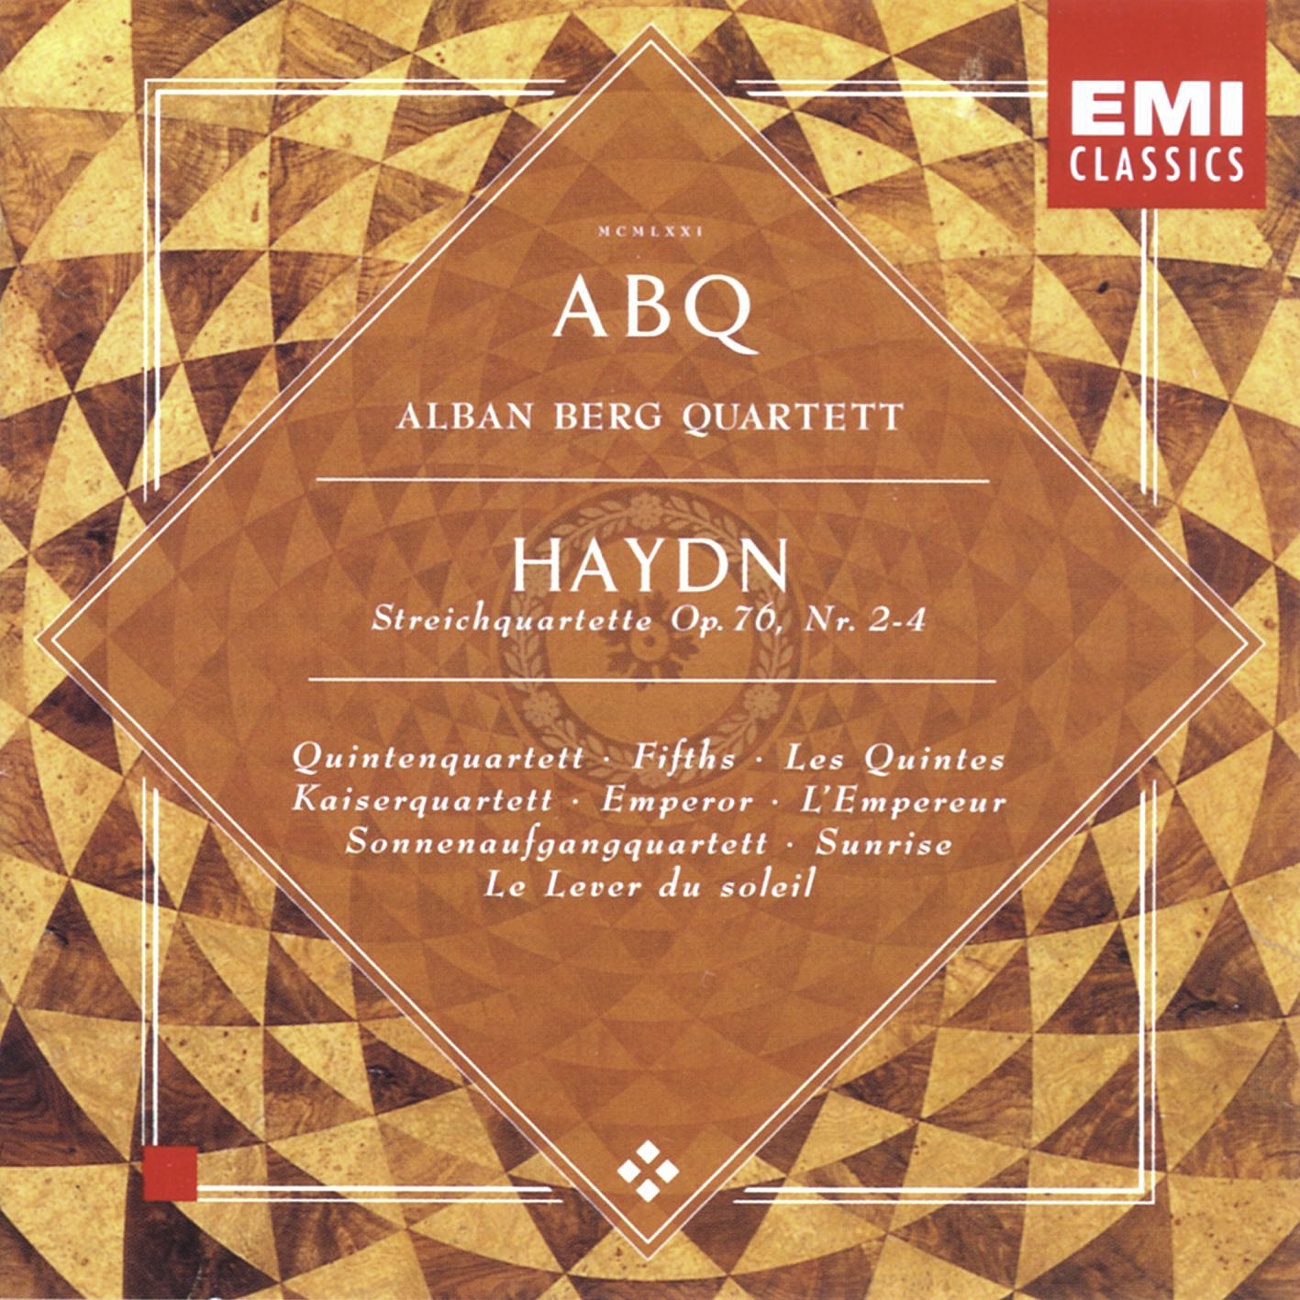 Haydn - String Quartets, Op 76 Nos 2-4